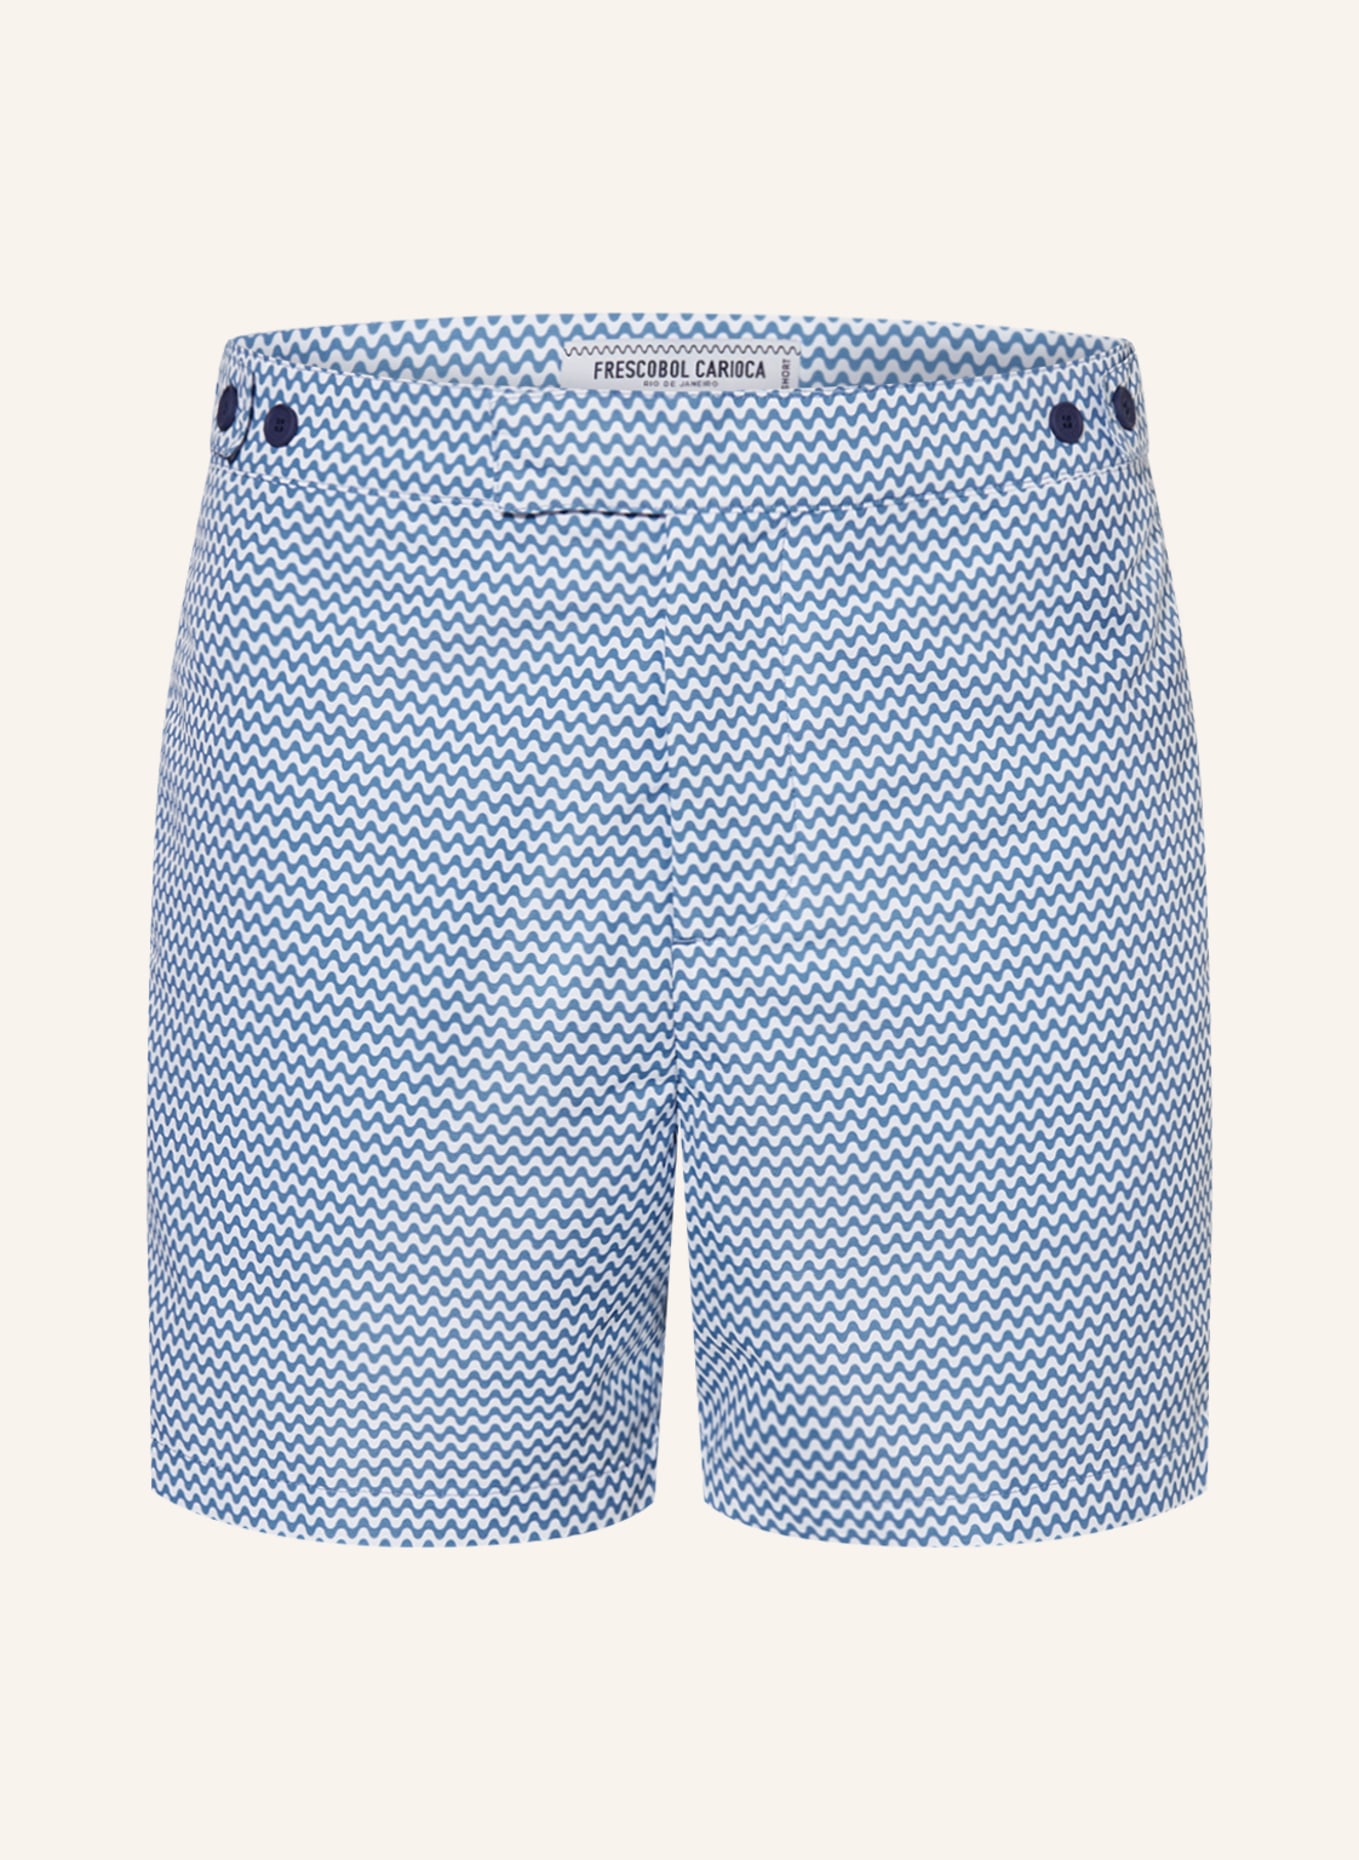 FRESCOBOL CARIOCA Swim shorts COPACABANA, Color: BLUE/ WHITE (Image 1)